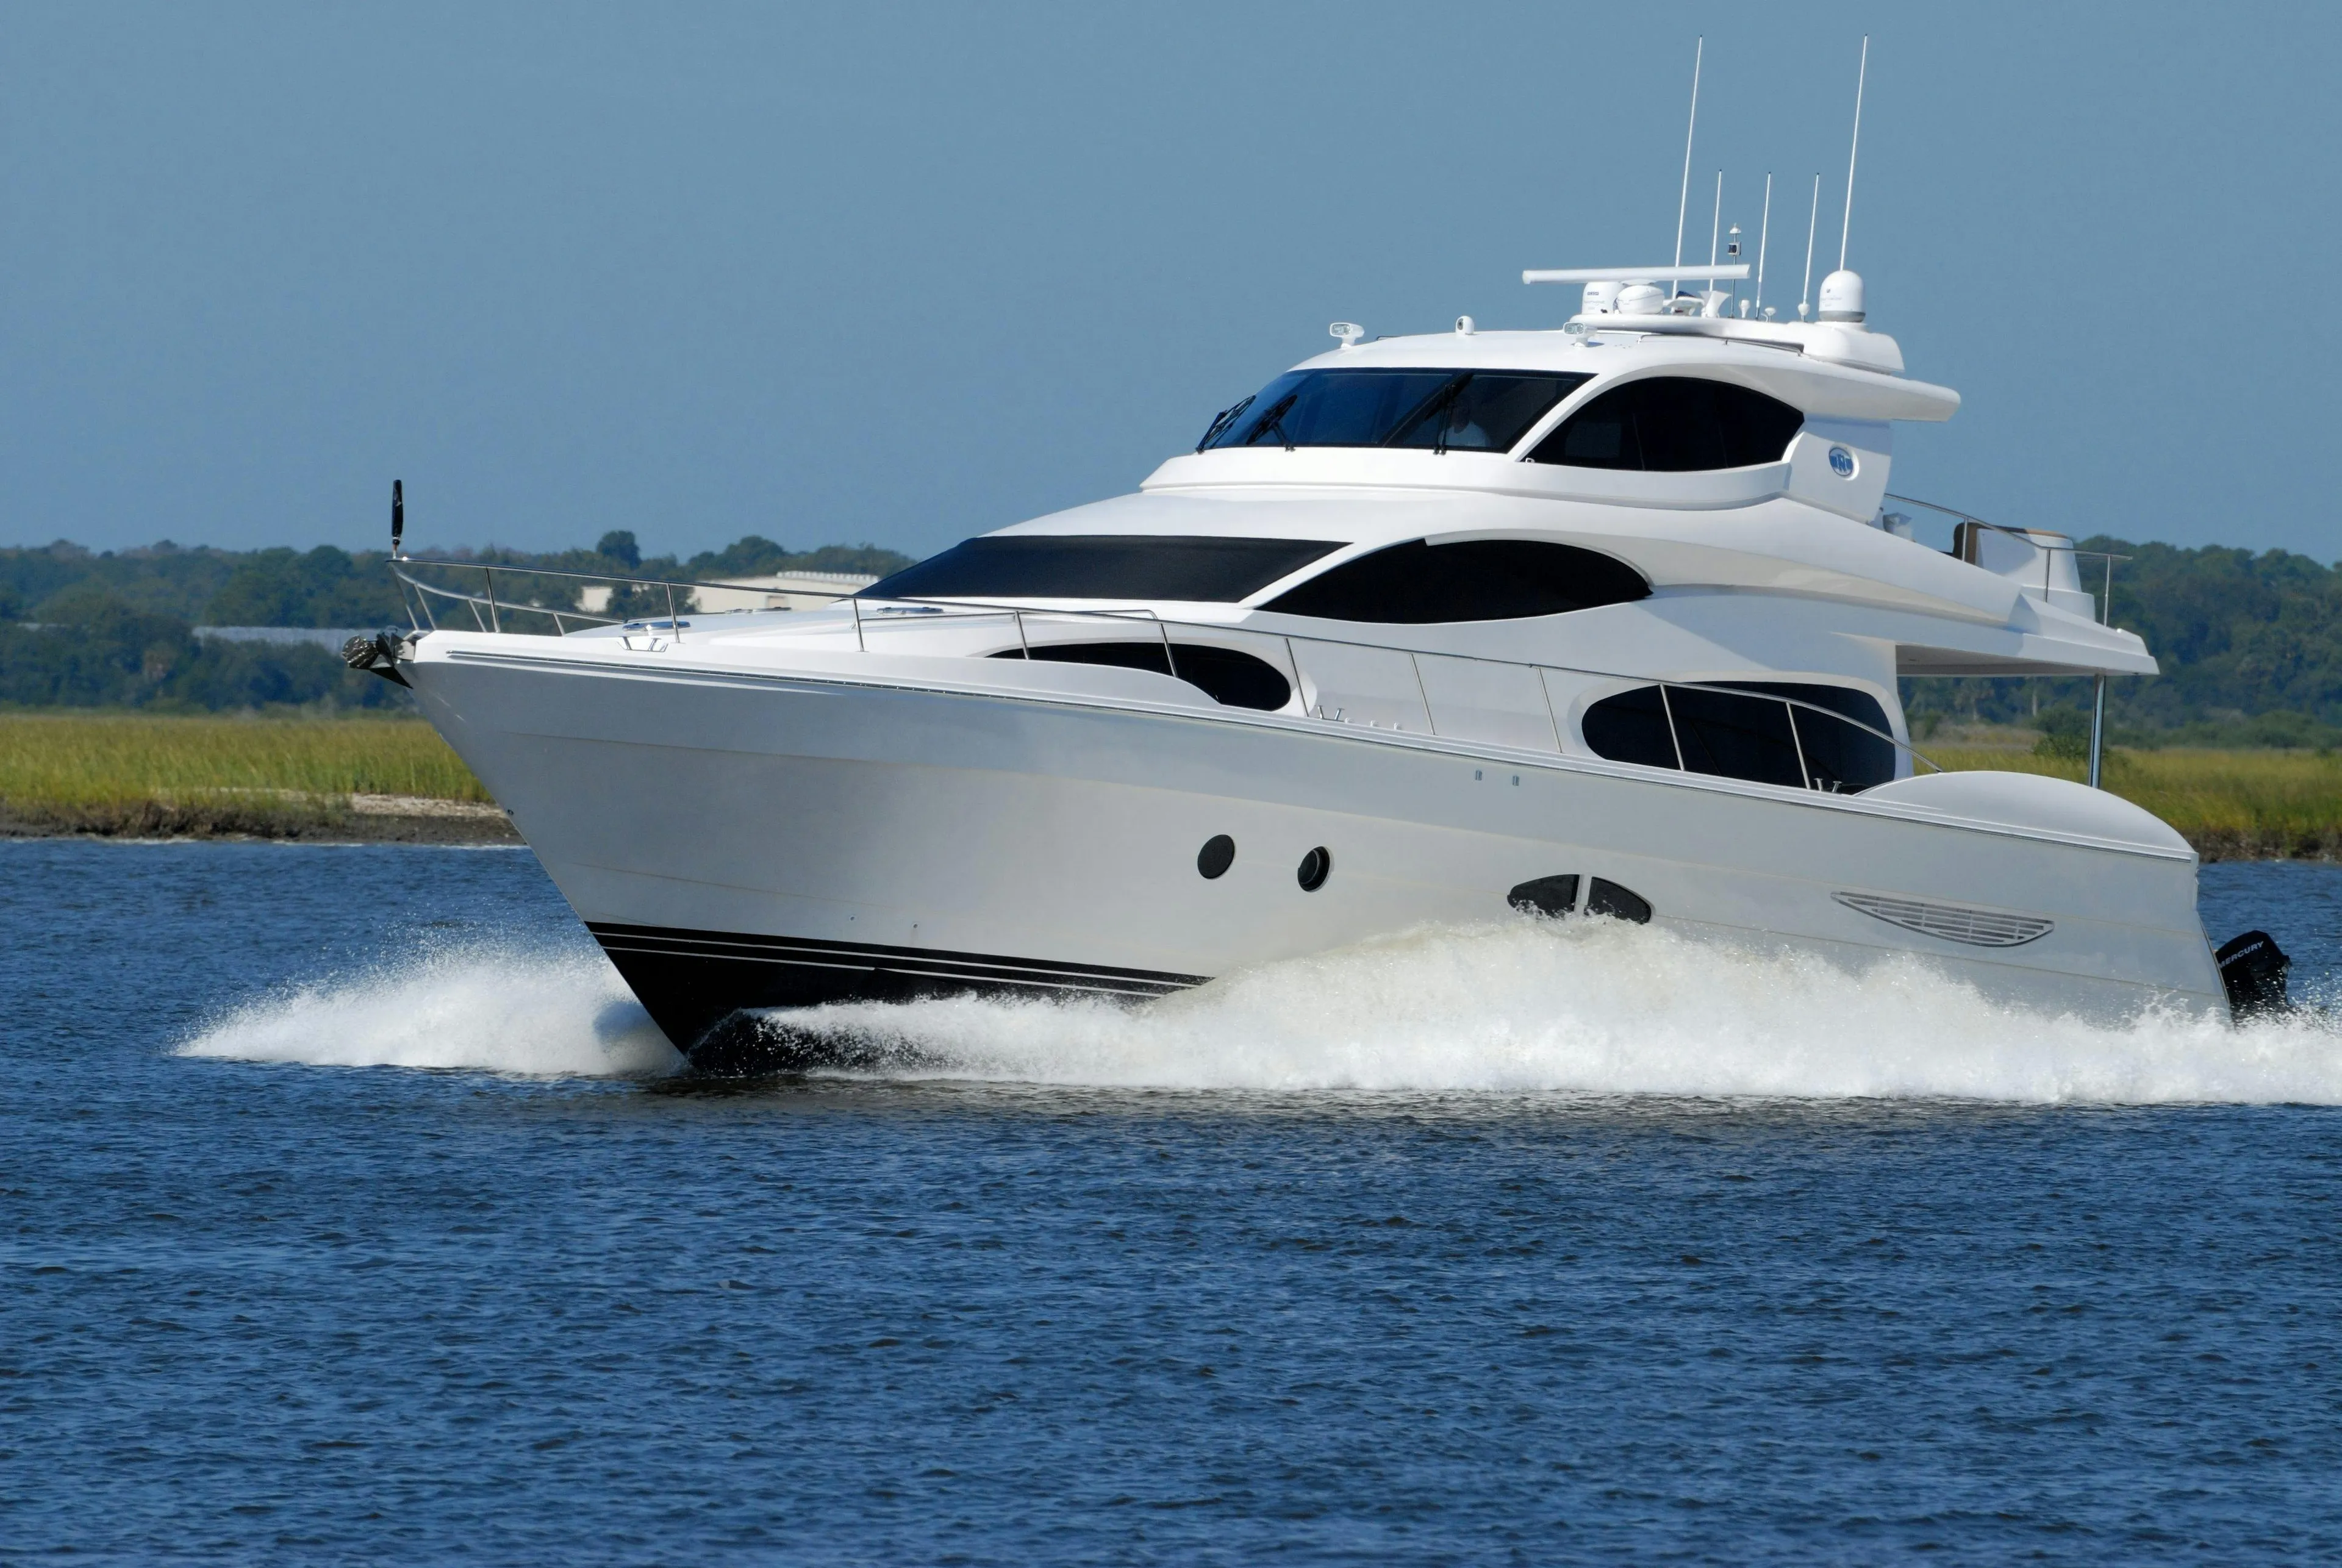 luxury yacht boat speed water 163236